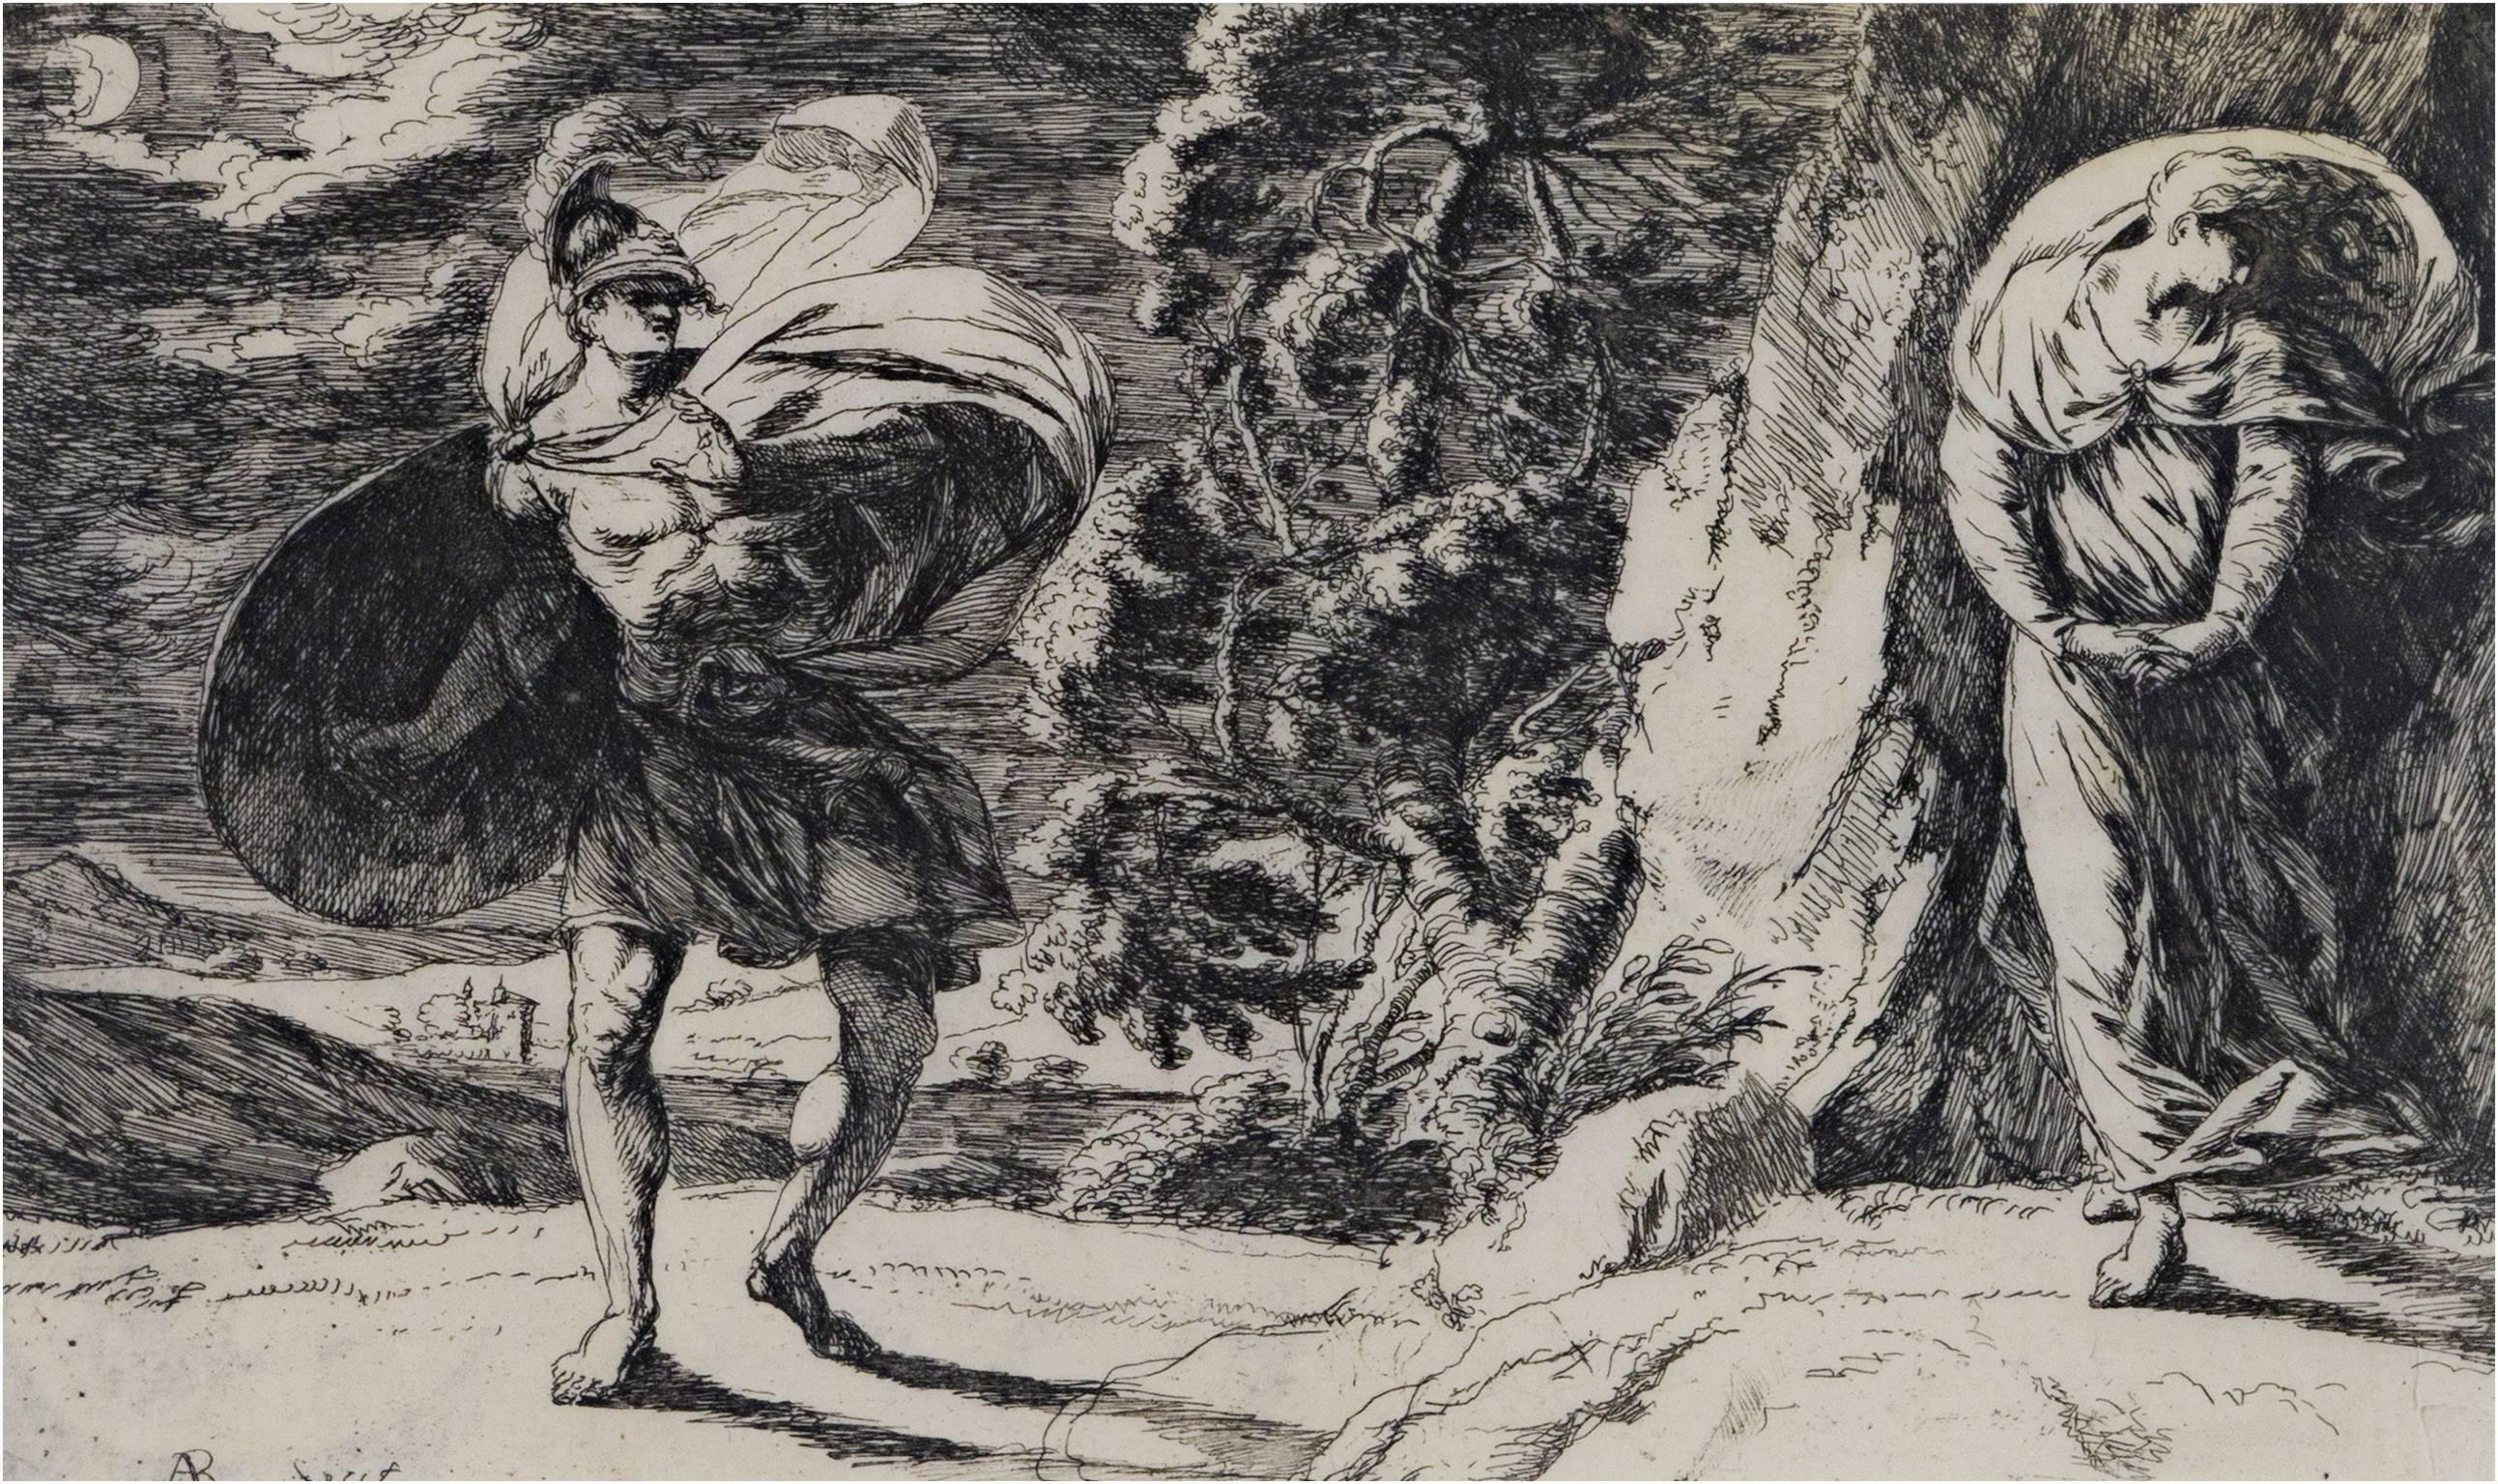 "Persée et Andromède" est une gravure originale de l'artiste écossais Alexander Runciman, signée dans la partie inférieure gauche de la plaque. Elle représente Persée, à gauche, balançant son bouclier et une jeune femme, Andromède, à droite,